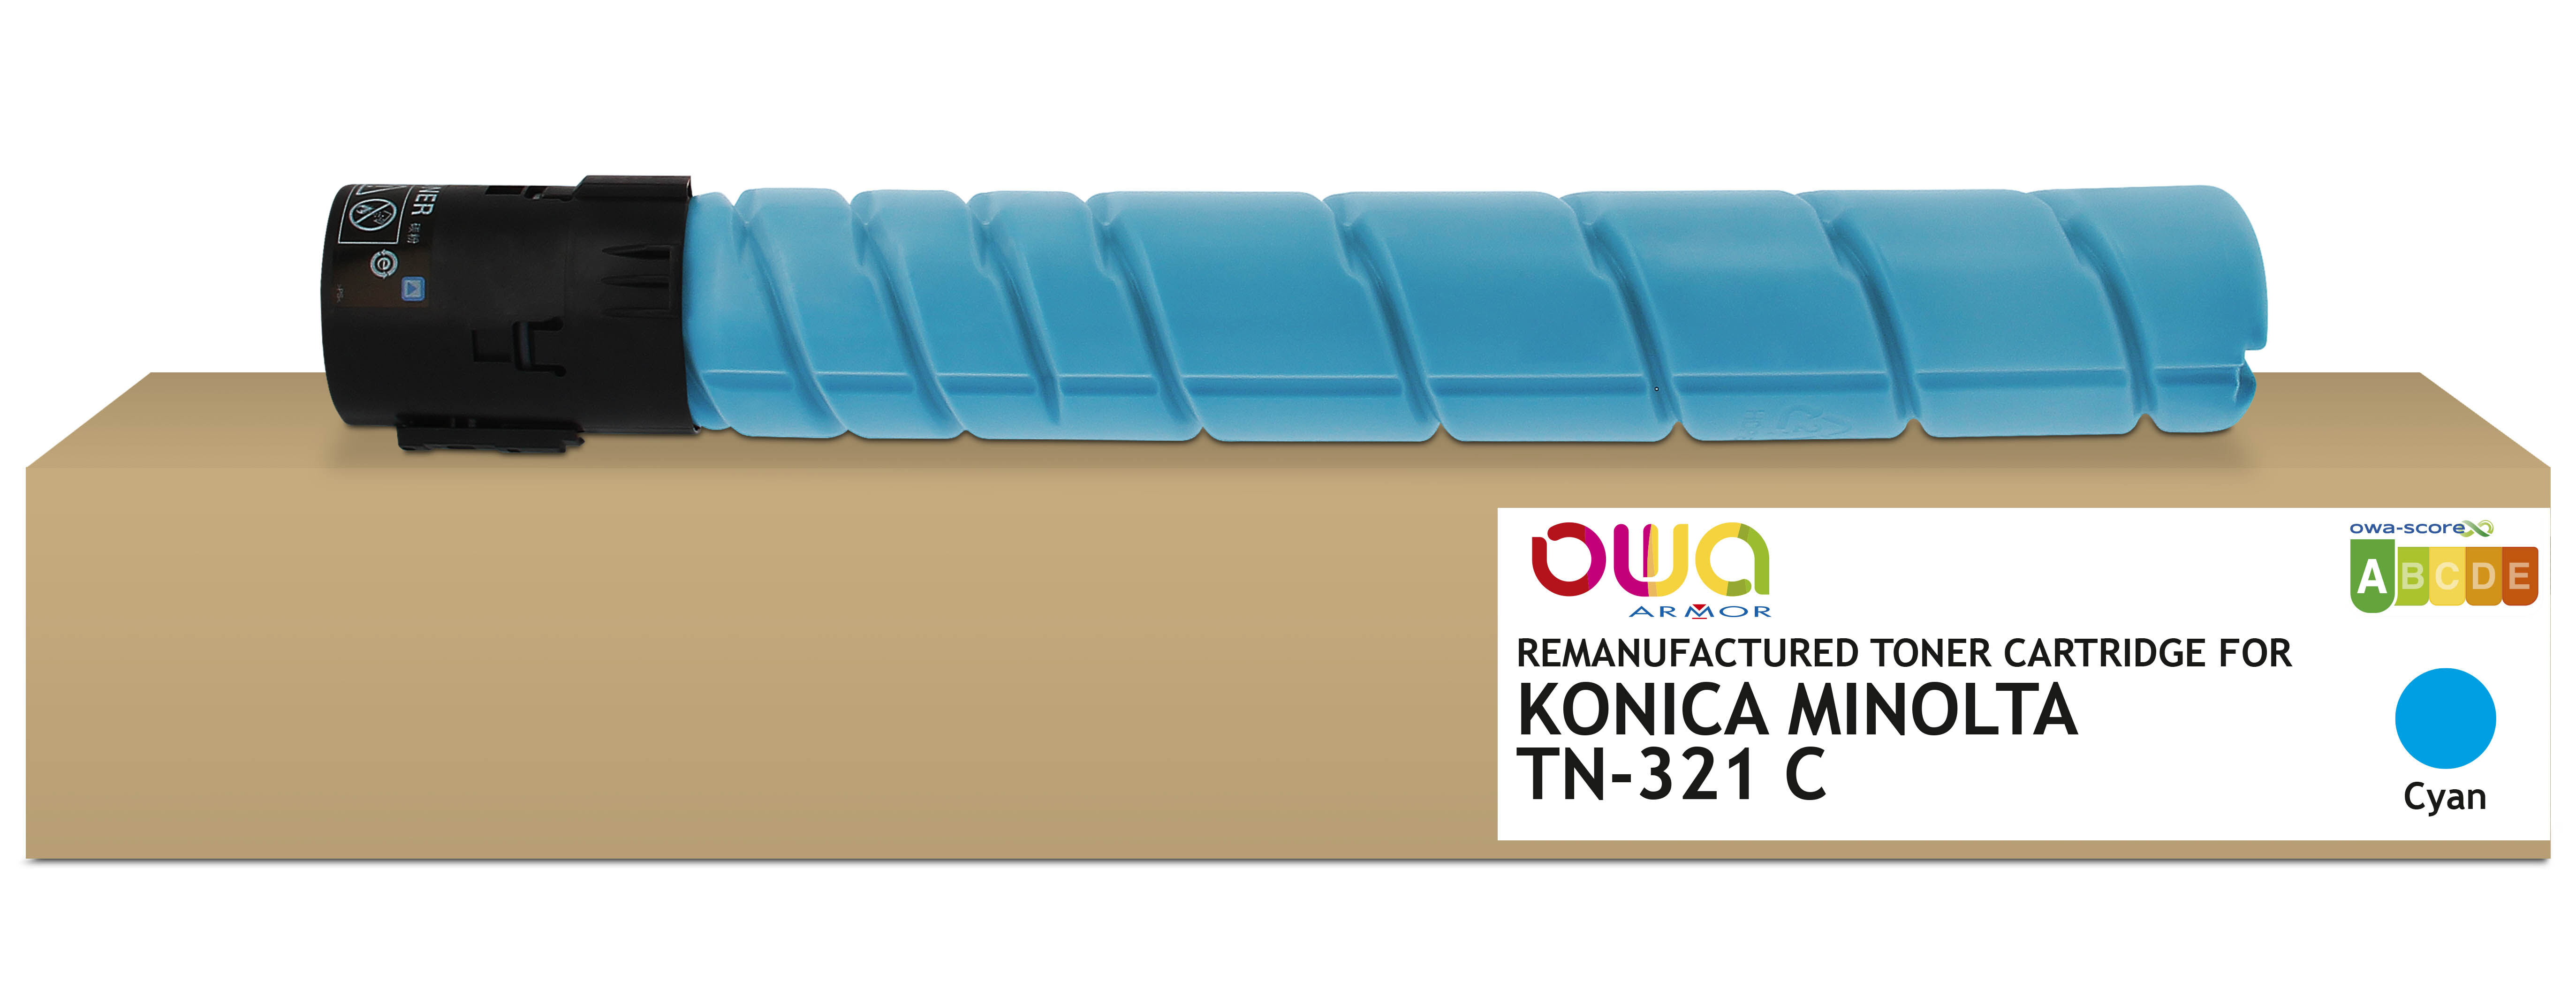 Toner remanufacturé OWA - standard - Cyan - pour KONICA MINOLTA TN-321 C, DEVELOP A33K4D0, OLIVETTI B1037, KONICA MINOLTA TN-321 C